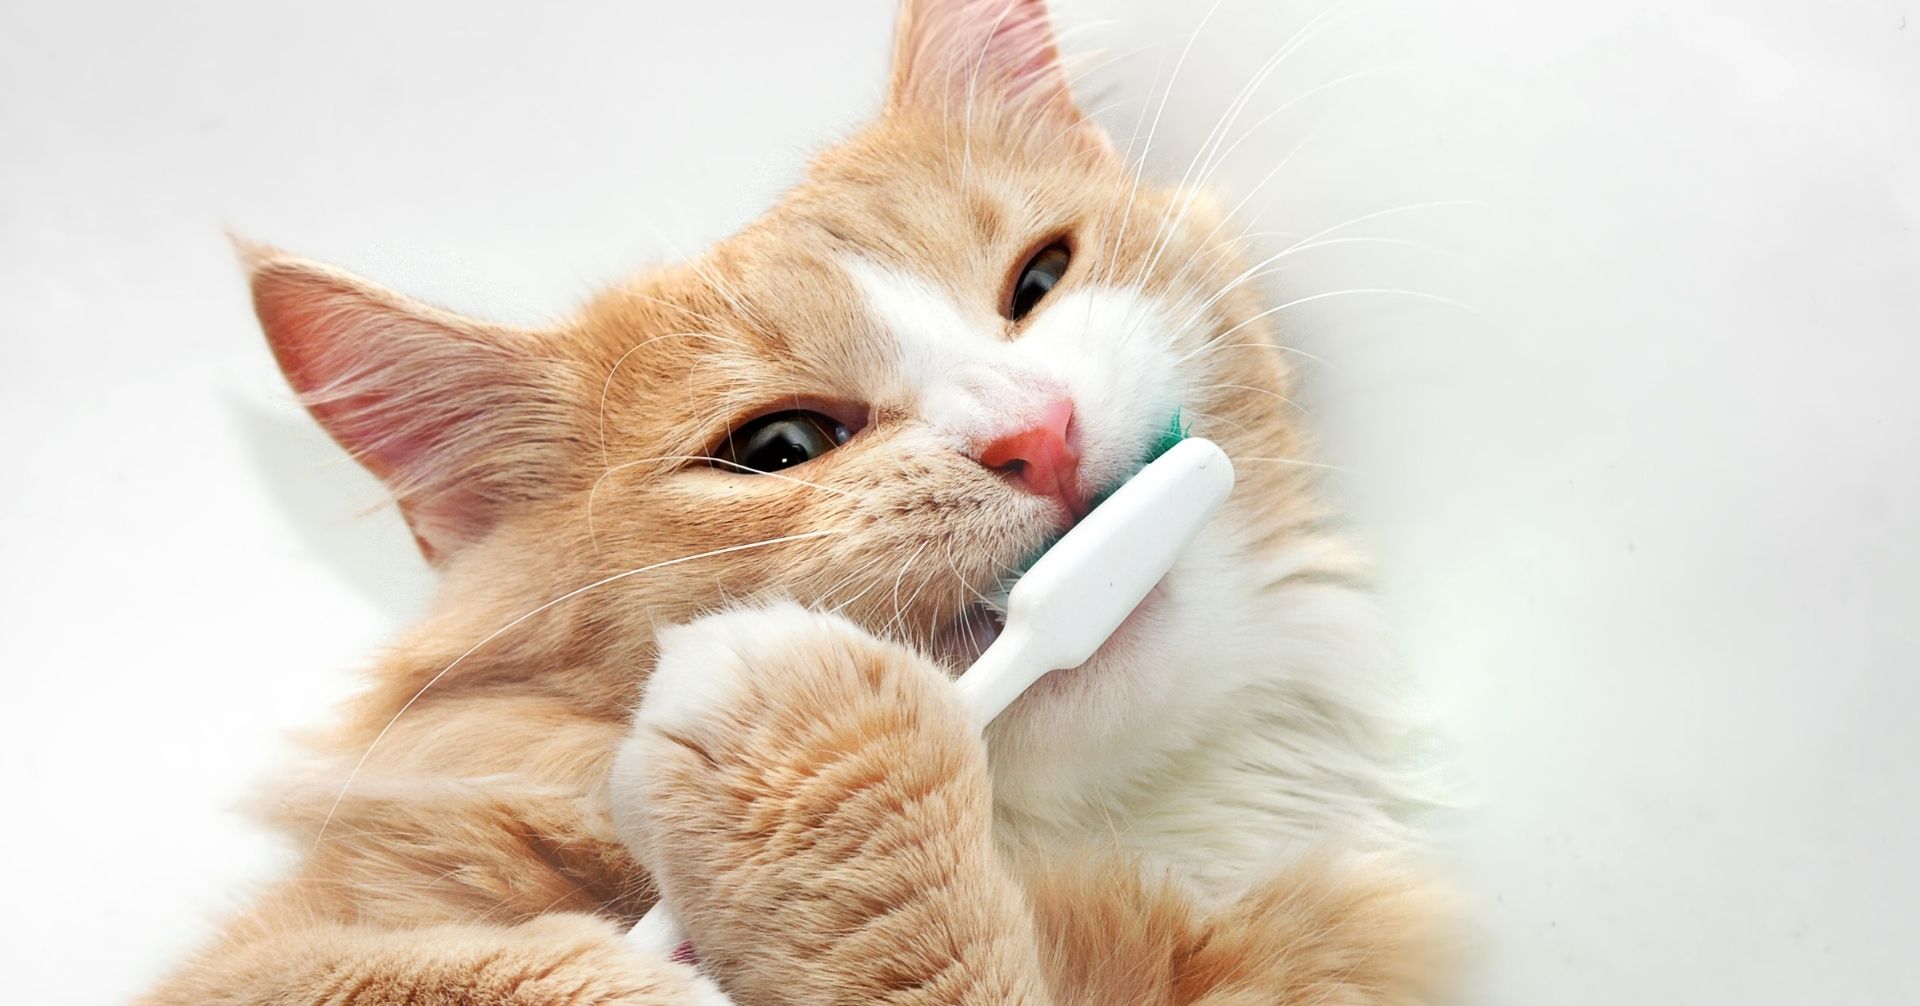 愛猫の口臭がアンモニア臭い!?口臭の原因と対策を考える